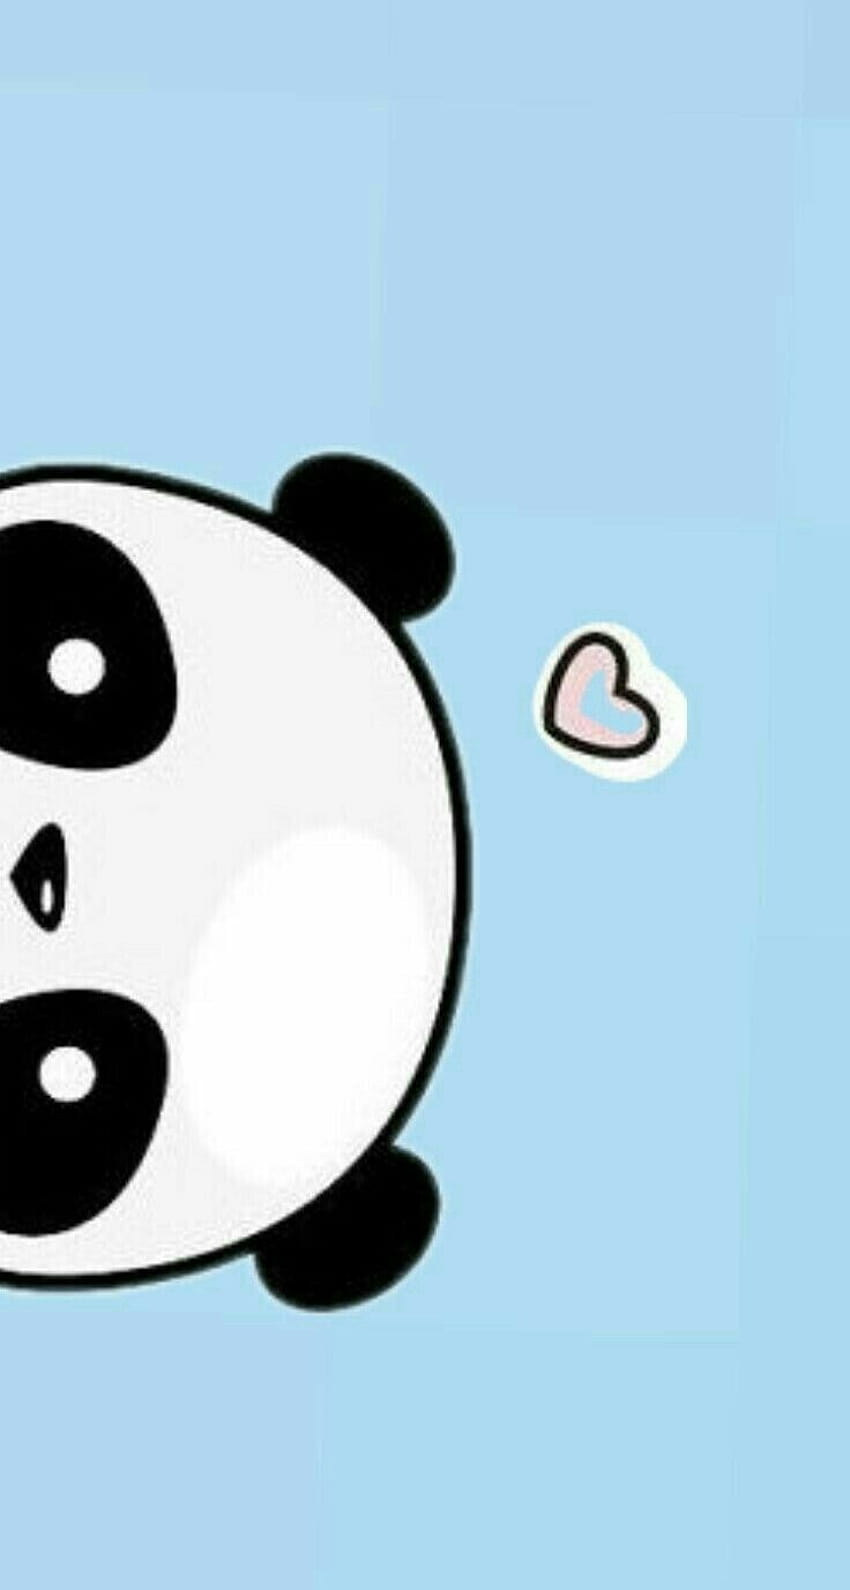 A cute panda bear with heart shaped eyes - Panda